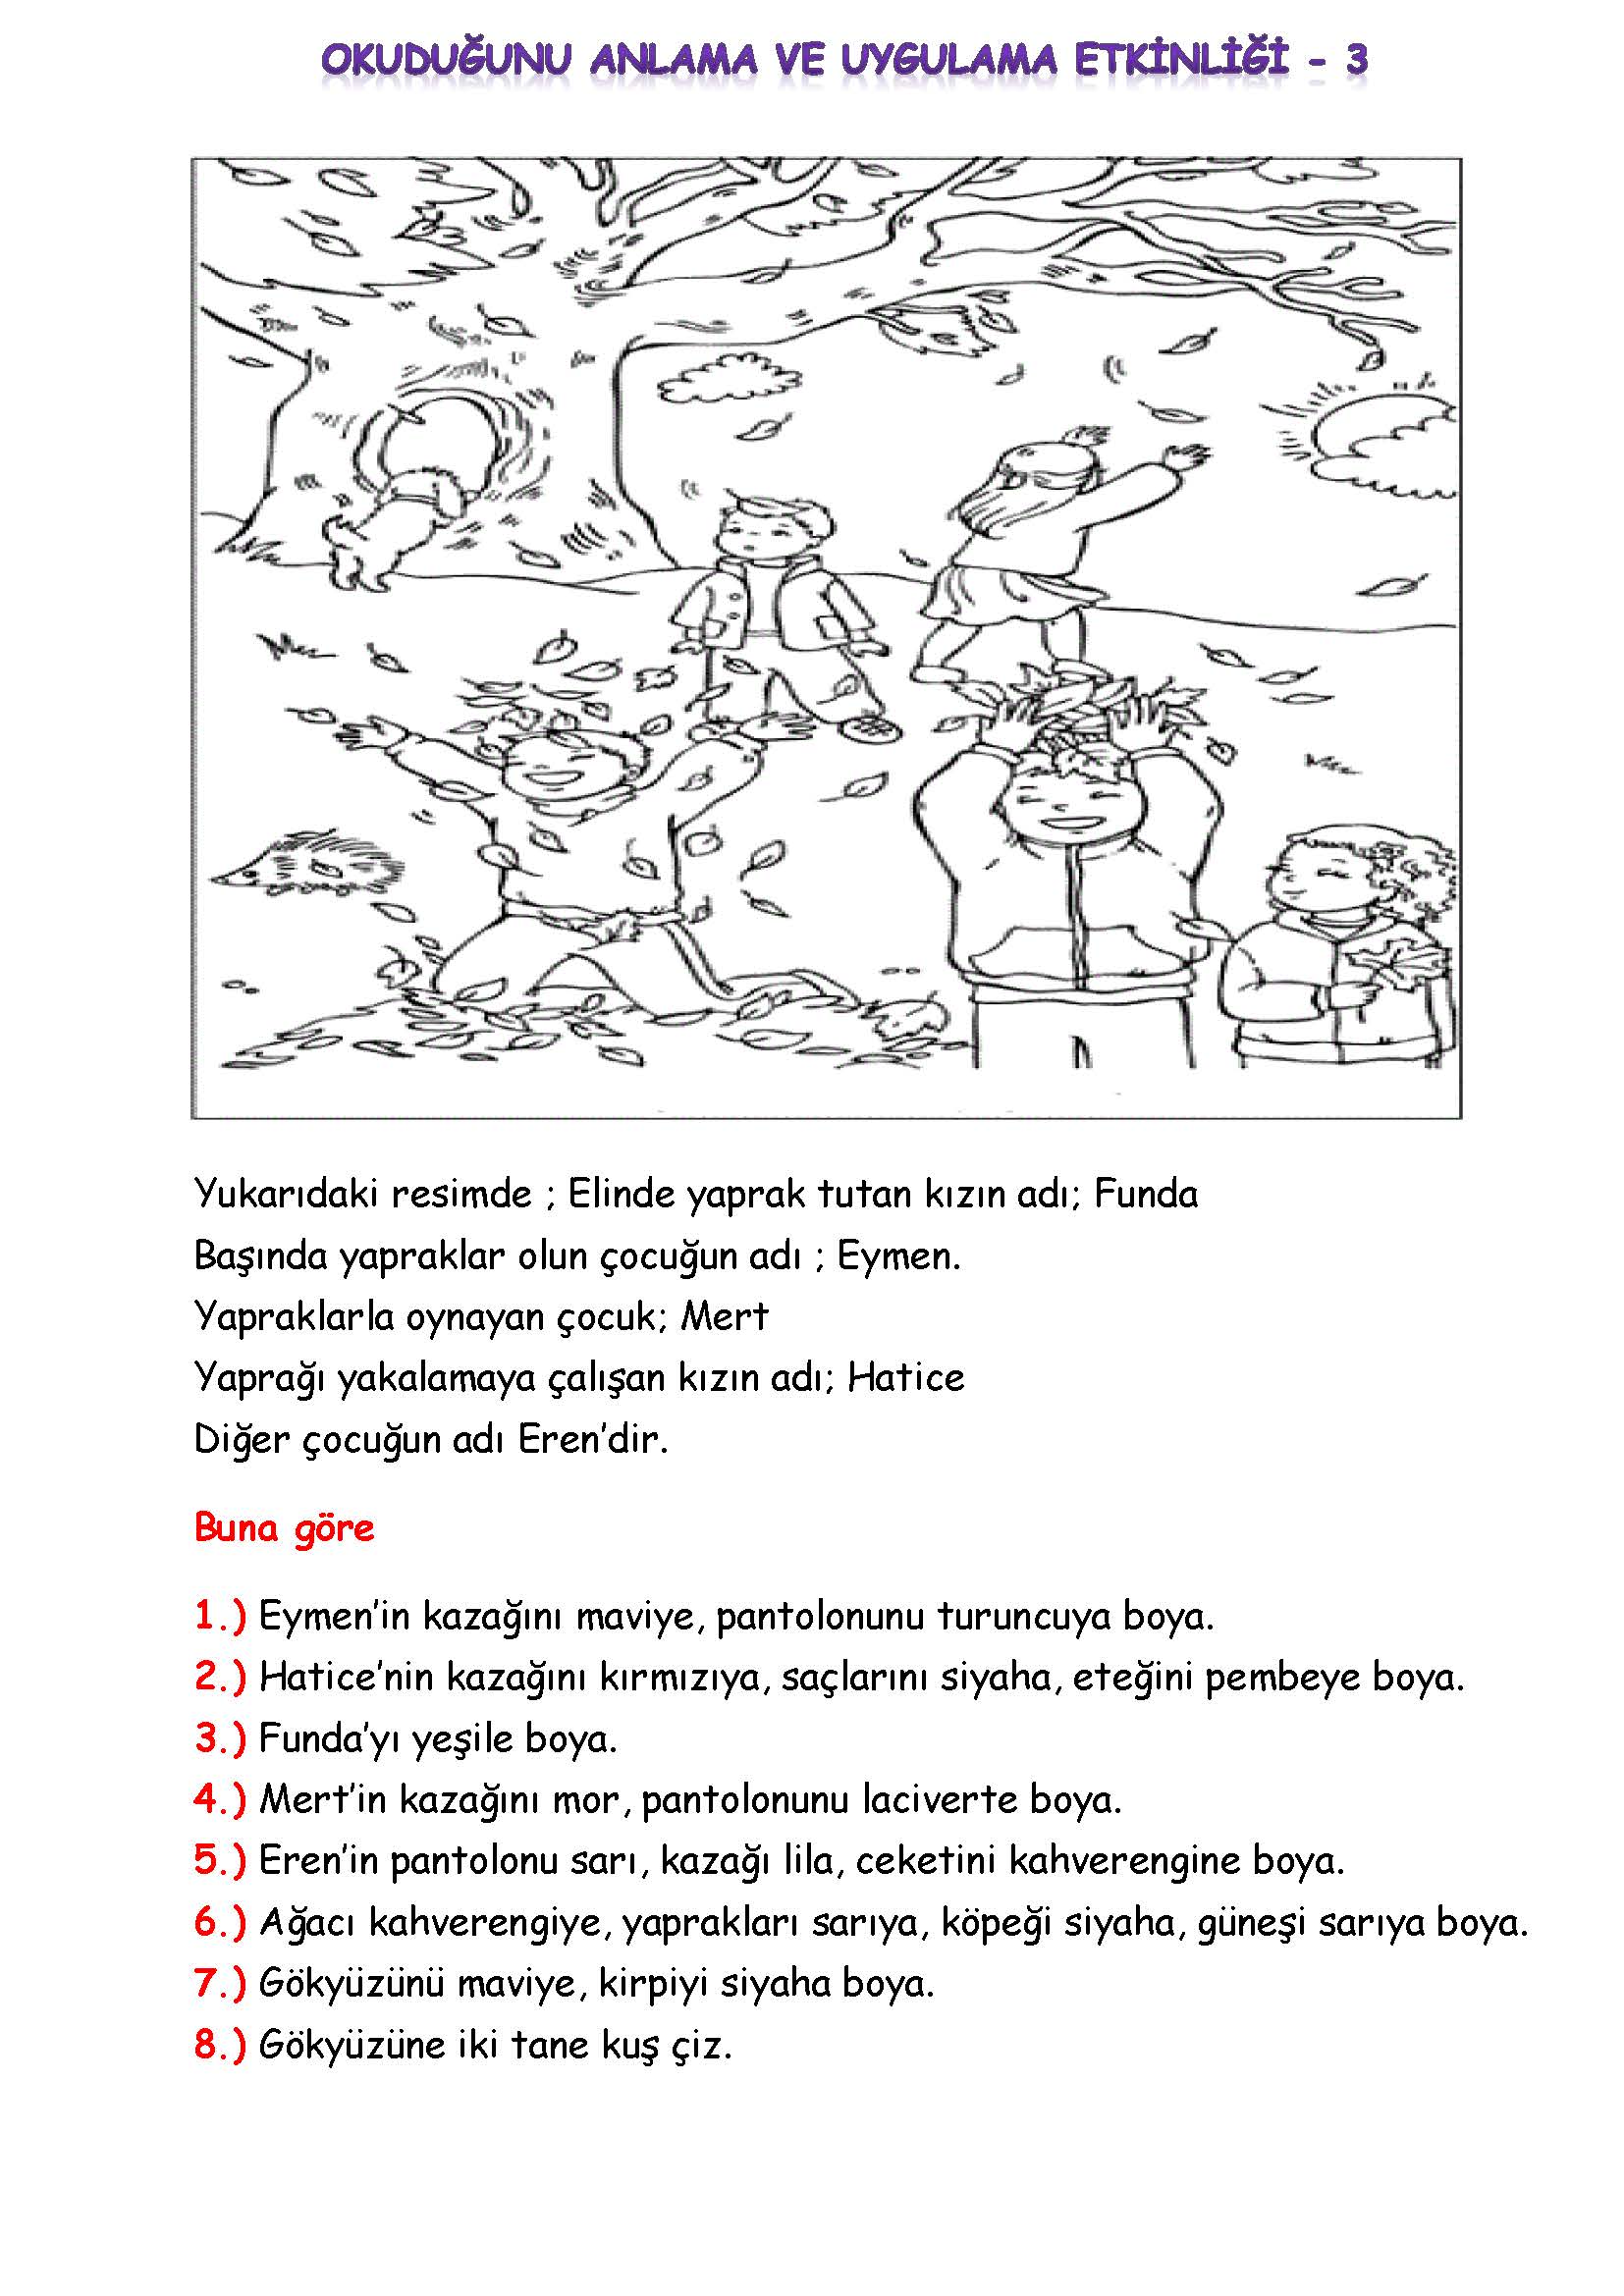 1. Sınıf Türkçe Okuduğunu Anlama ve Uygulama Etkinliği - 3